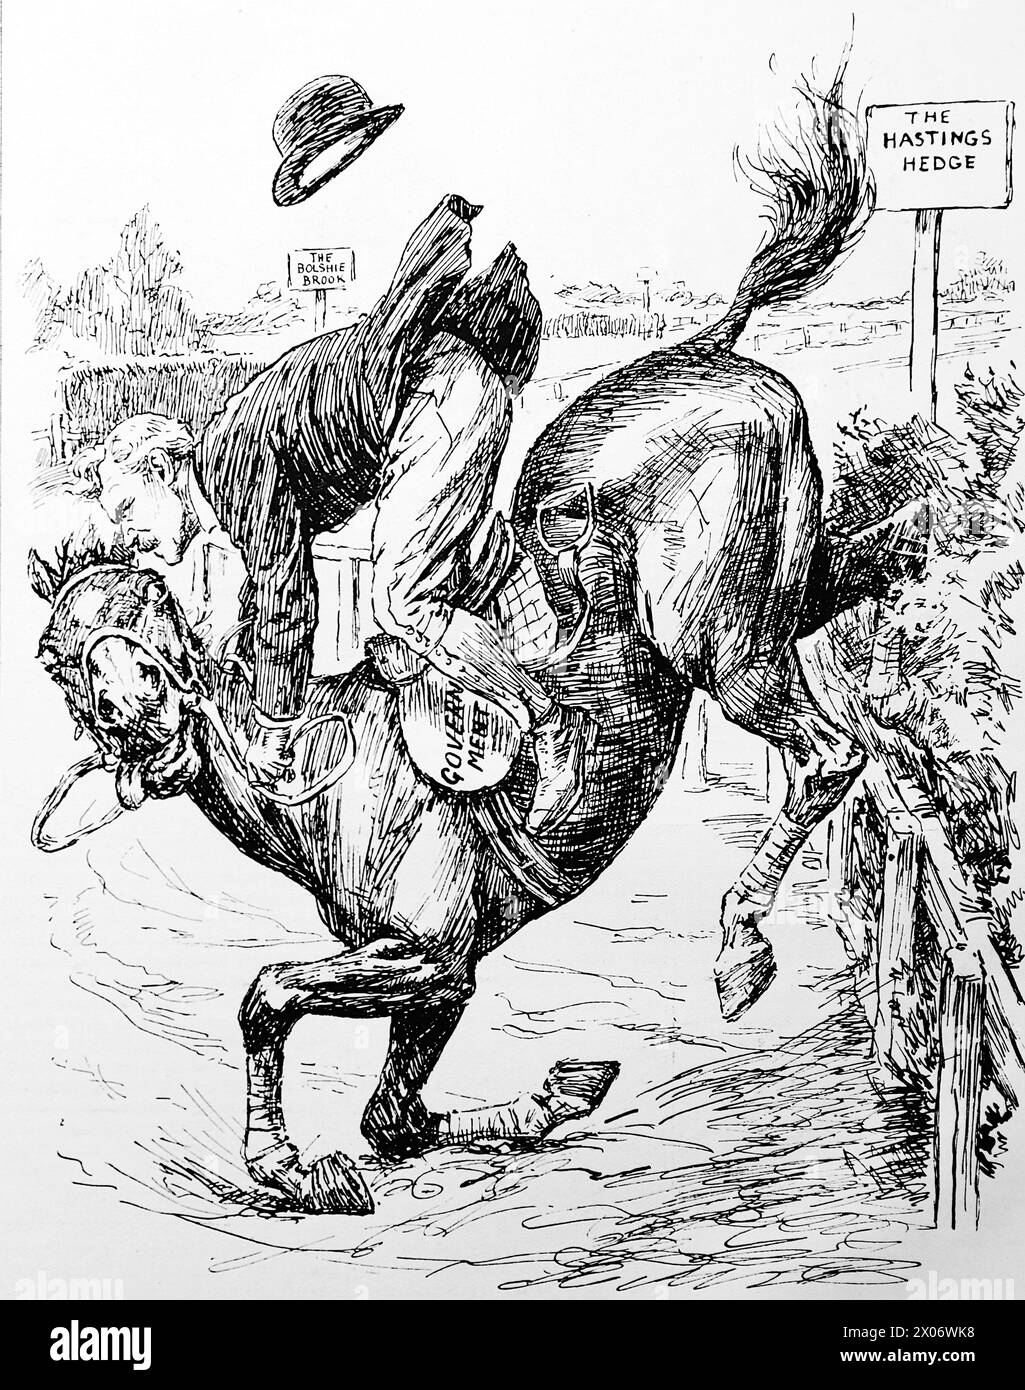 A Choice of Böse, Unattributed, 15. Oktober 1924, bei dem Labour-Premierminister Ramsay Macdonald auf einem Pferd reitet, das nach einem Sprung fällt. Foto von einer Strichzeichnung, die ursprünglich 1924 in der Zeitschrift Punch and London Charivari gedruckt wurde. Dies ist ein gutes Beispiel für die geschickten Künstler und den Humor und die Satire der damaligen Zeit. Stockfoto